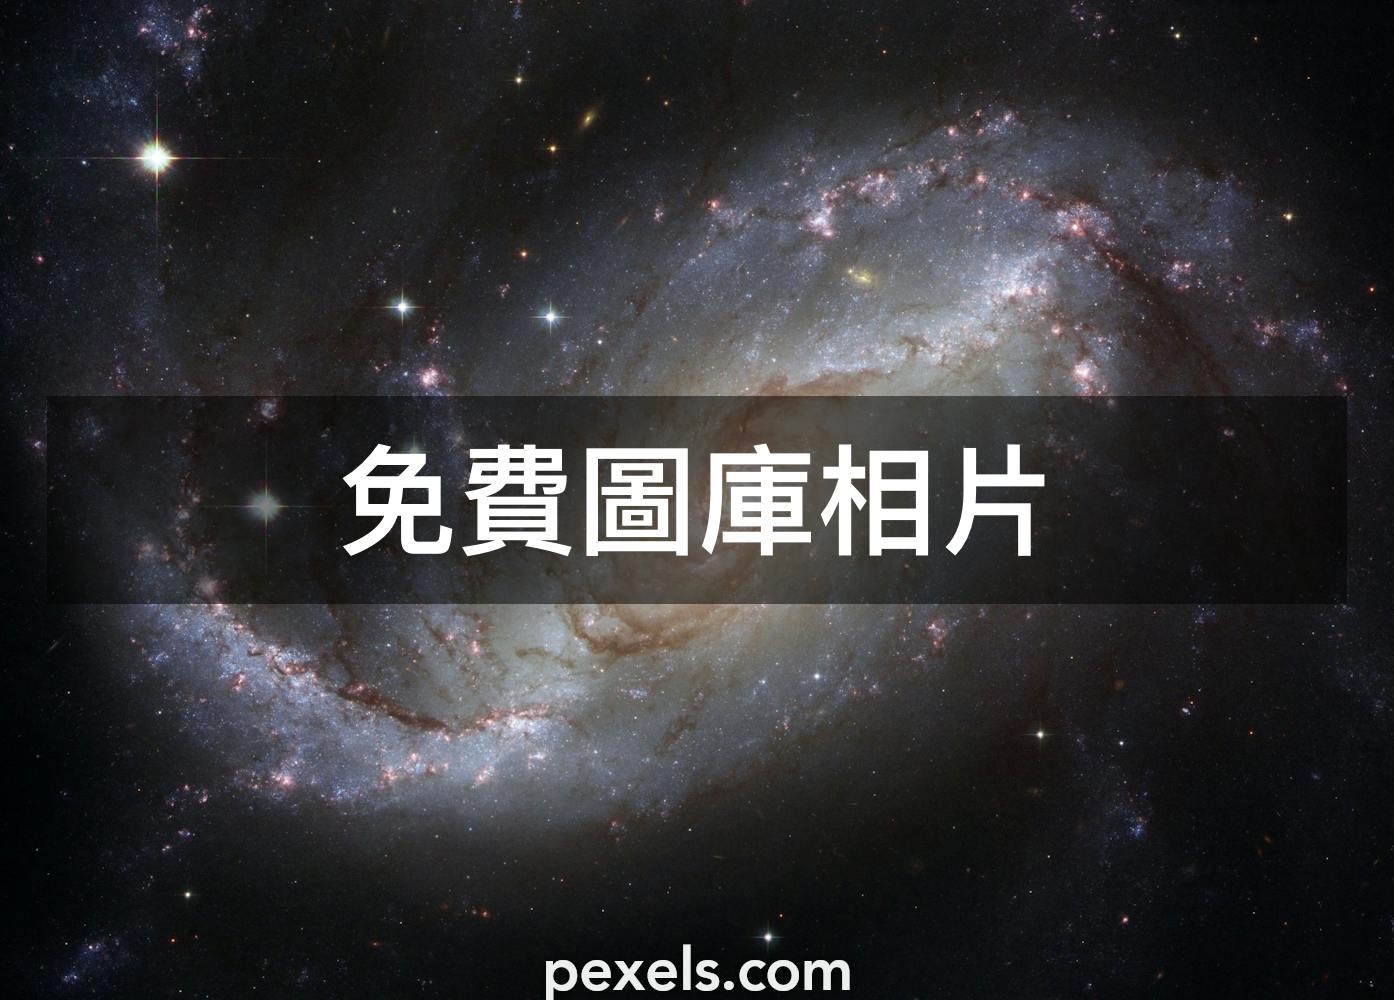 10 000 張最佳宇宙相片 100 免費下載 Pexels 圖庫相片